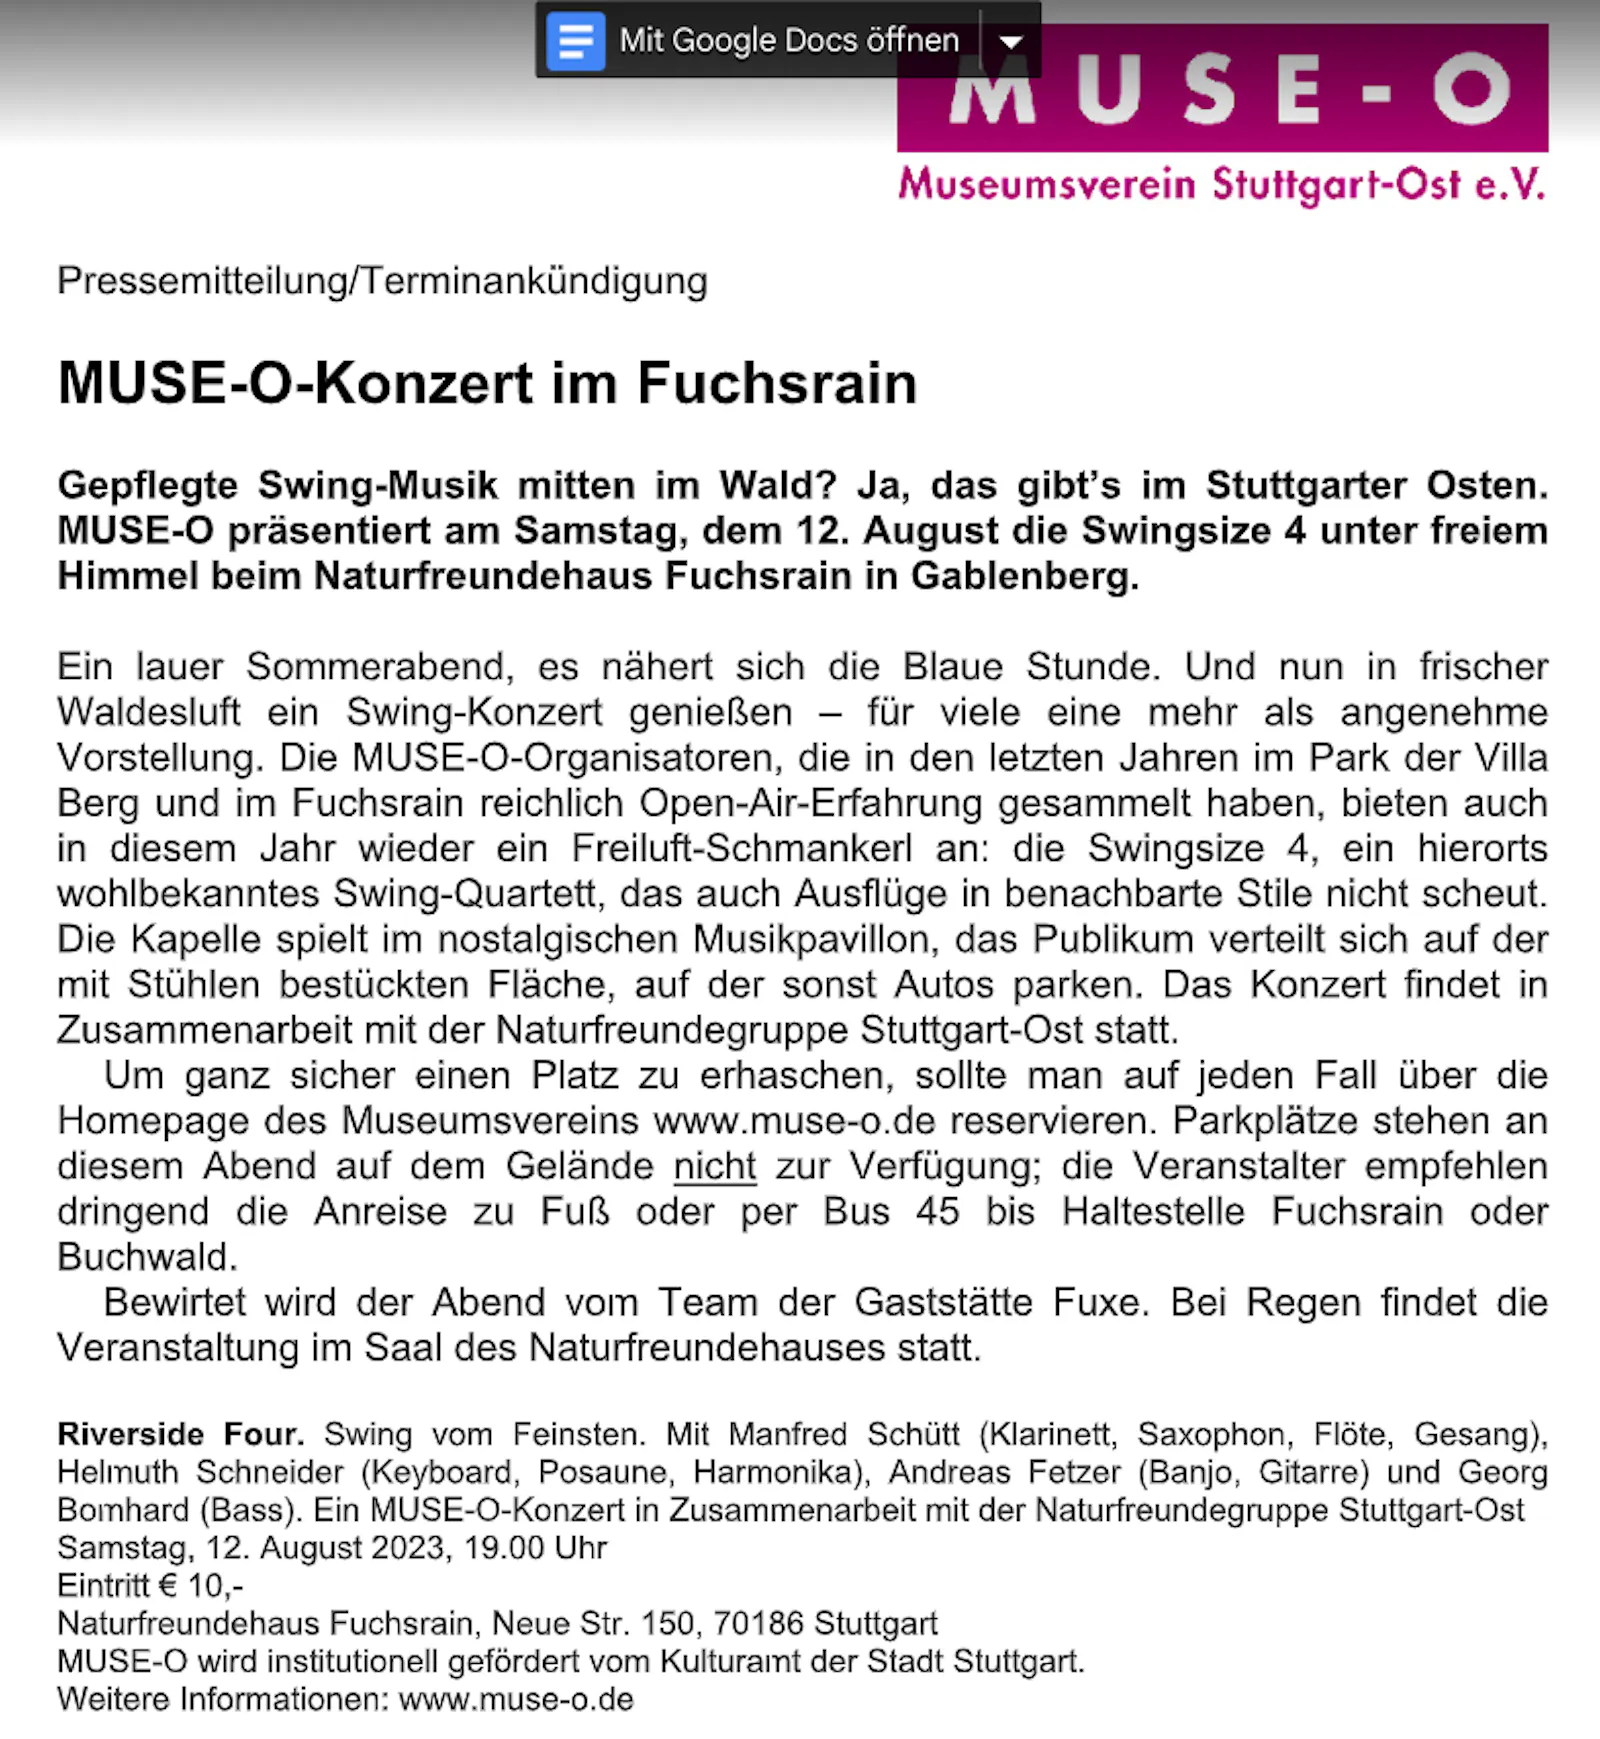 Pressemitteilung des Muse-O e.V. zum Swing-Konzert am Samstag beim Naturfreundehaus Fuchsrain in Gablenberg.